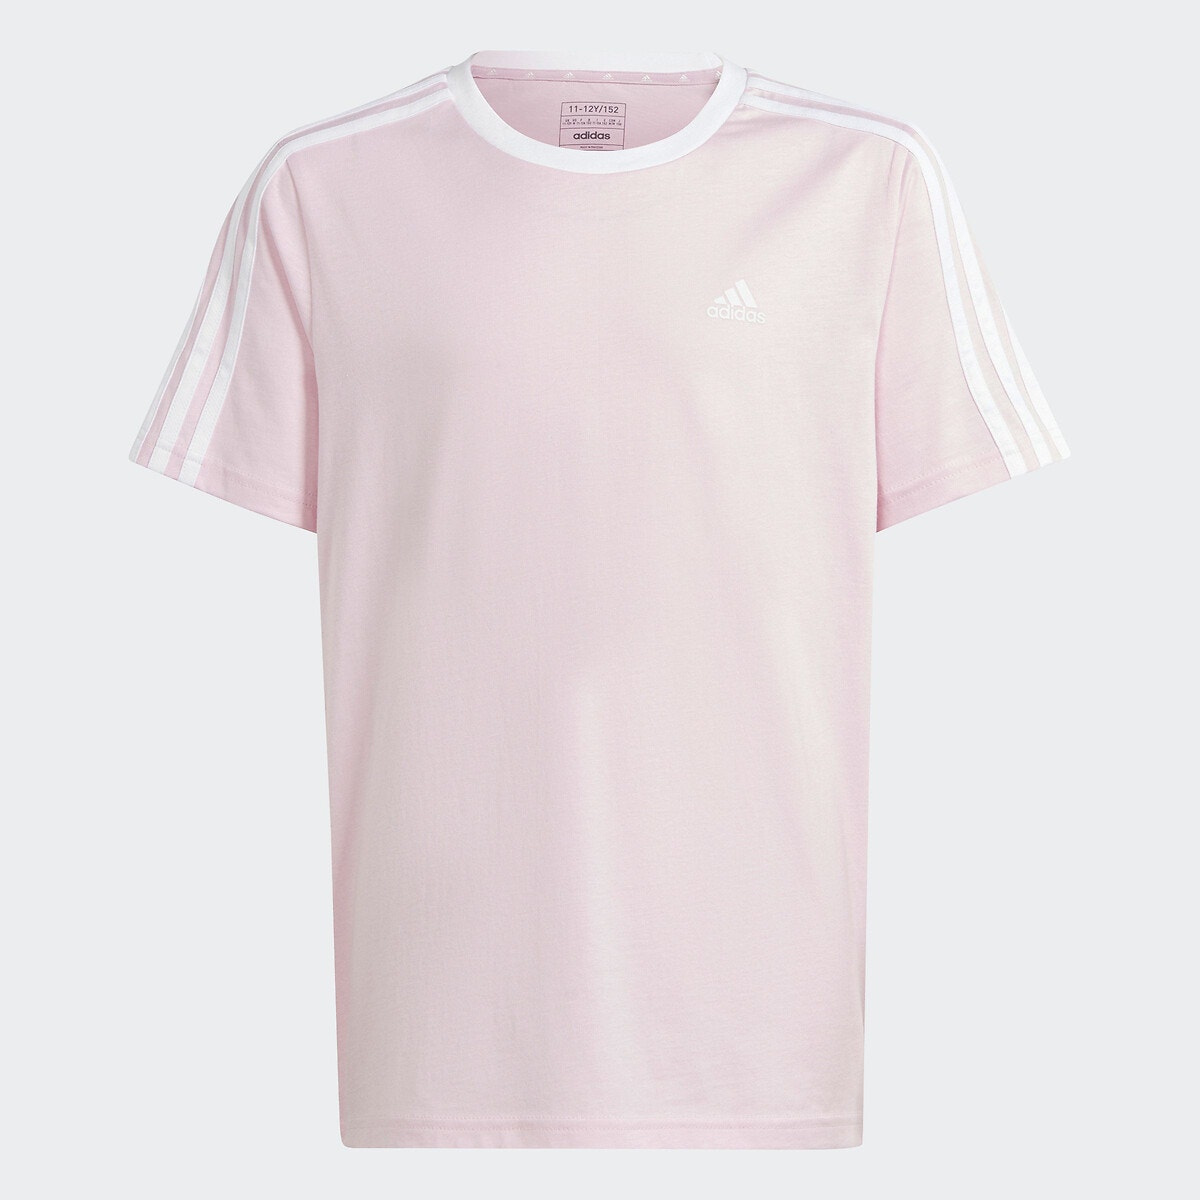 ADIDAS - T-shirt à manches courtes - multicolore Couleur Rose Taille 14 ans